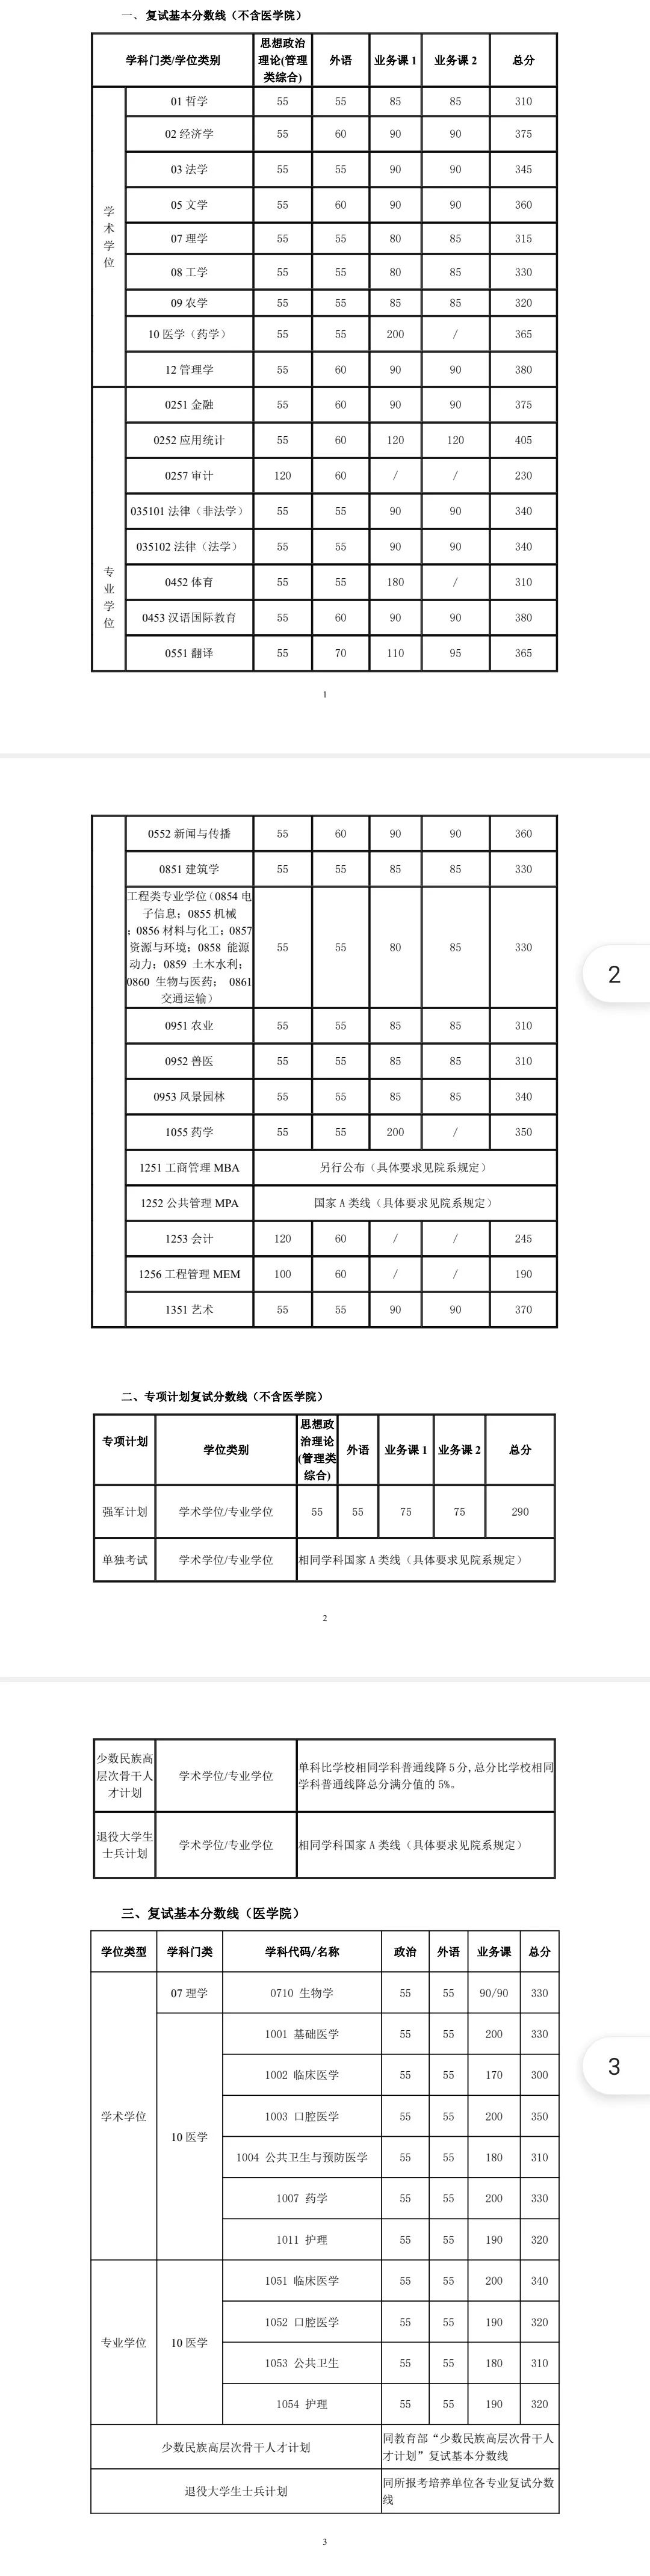 上海交通大学2021年硕士研究生入学考试复试基本分数线